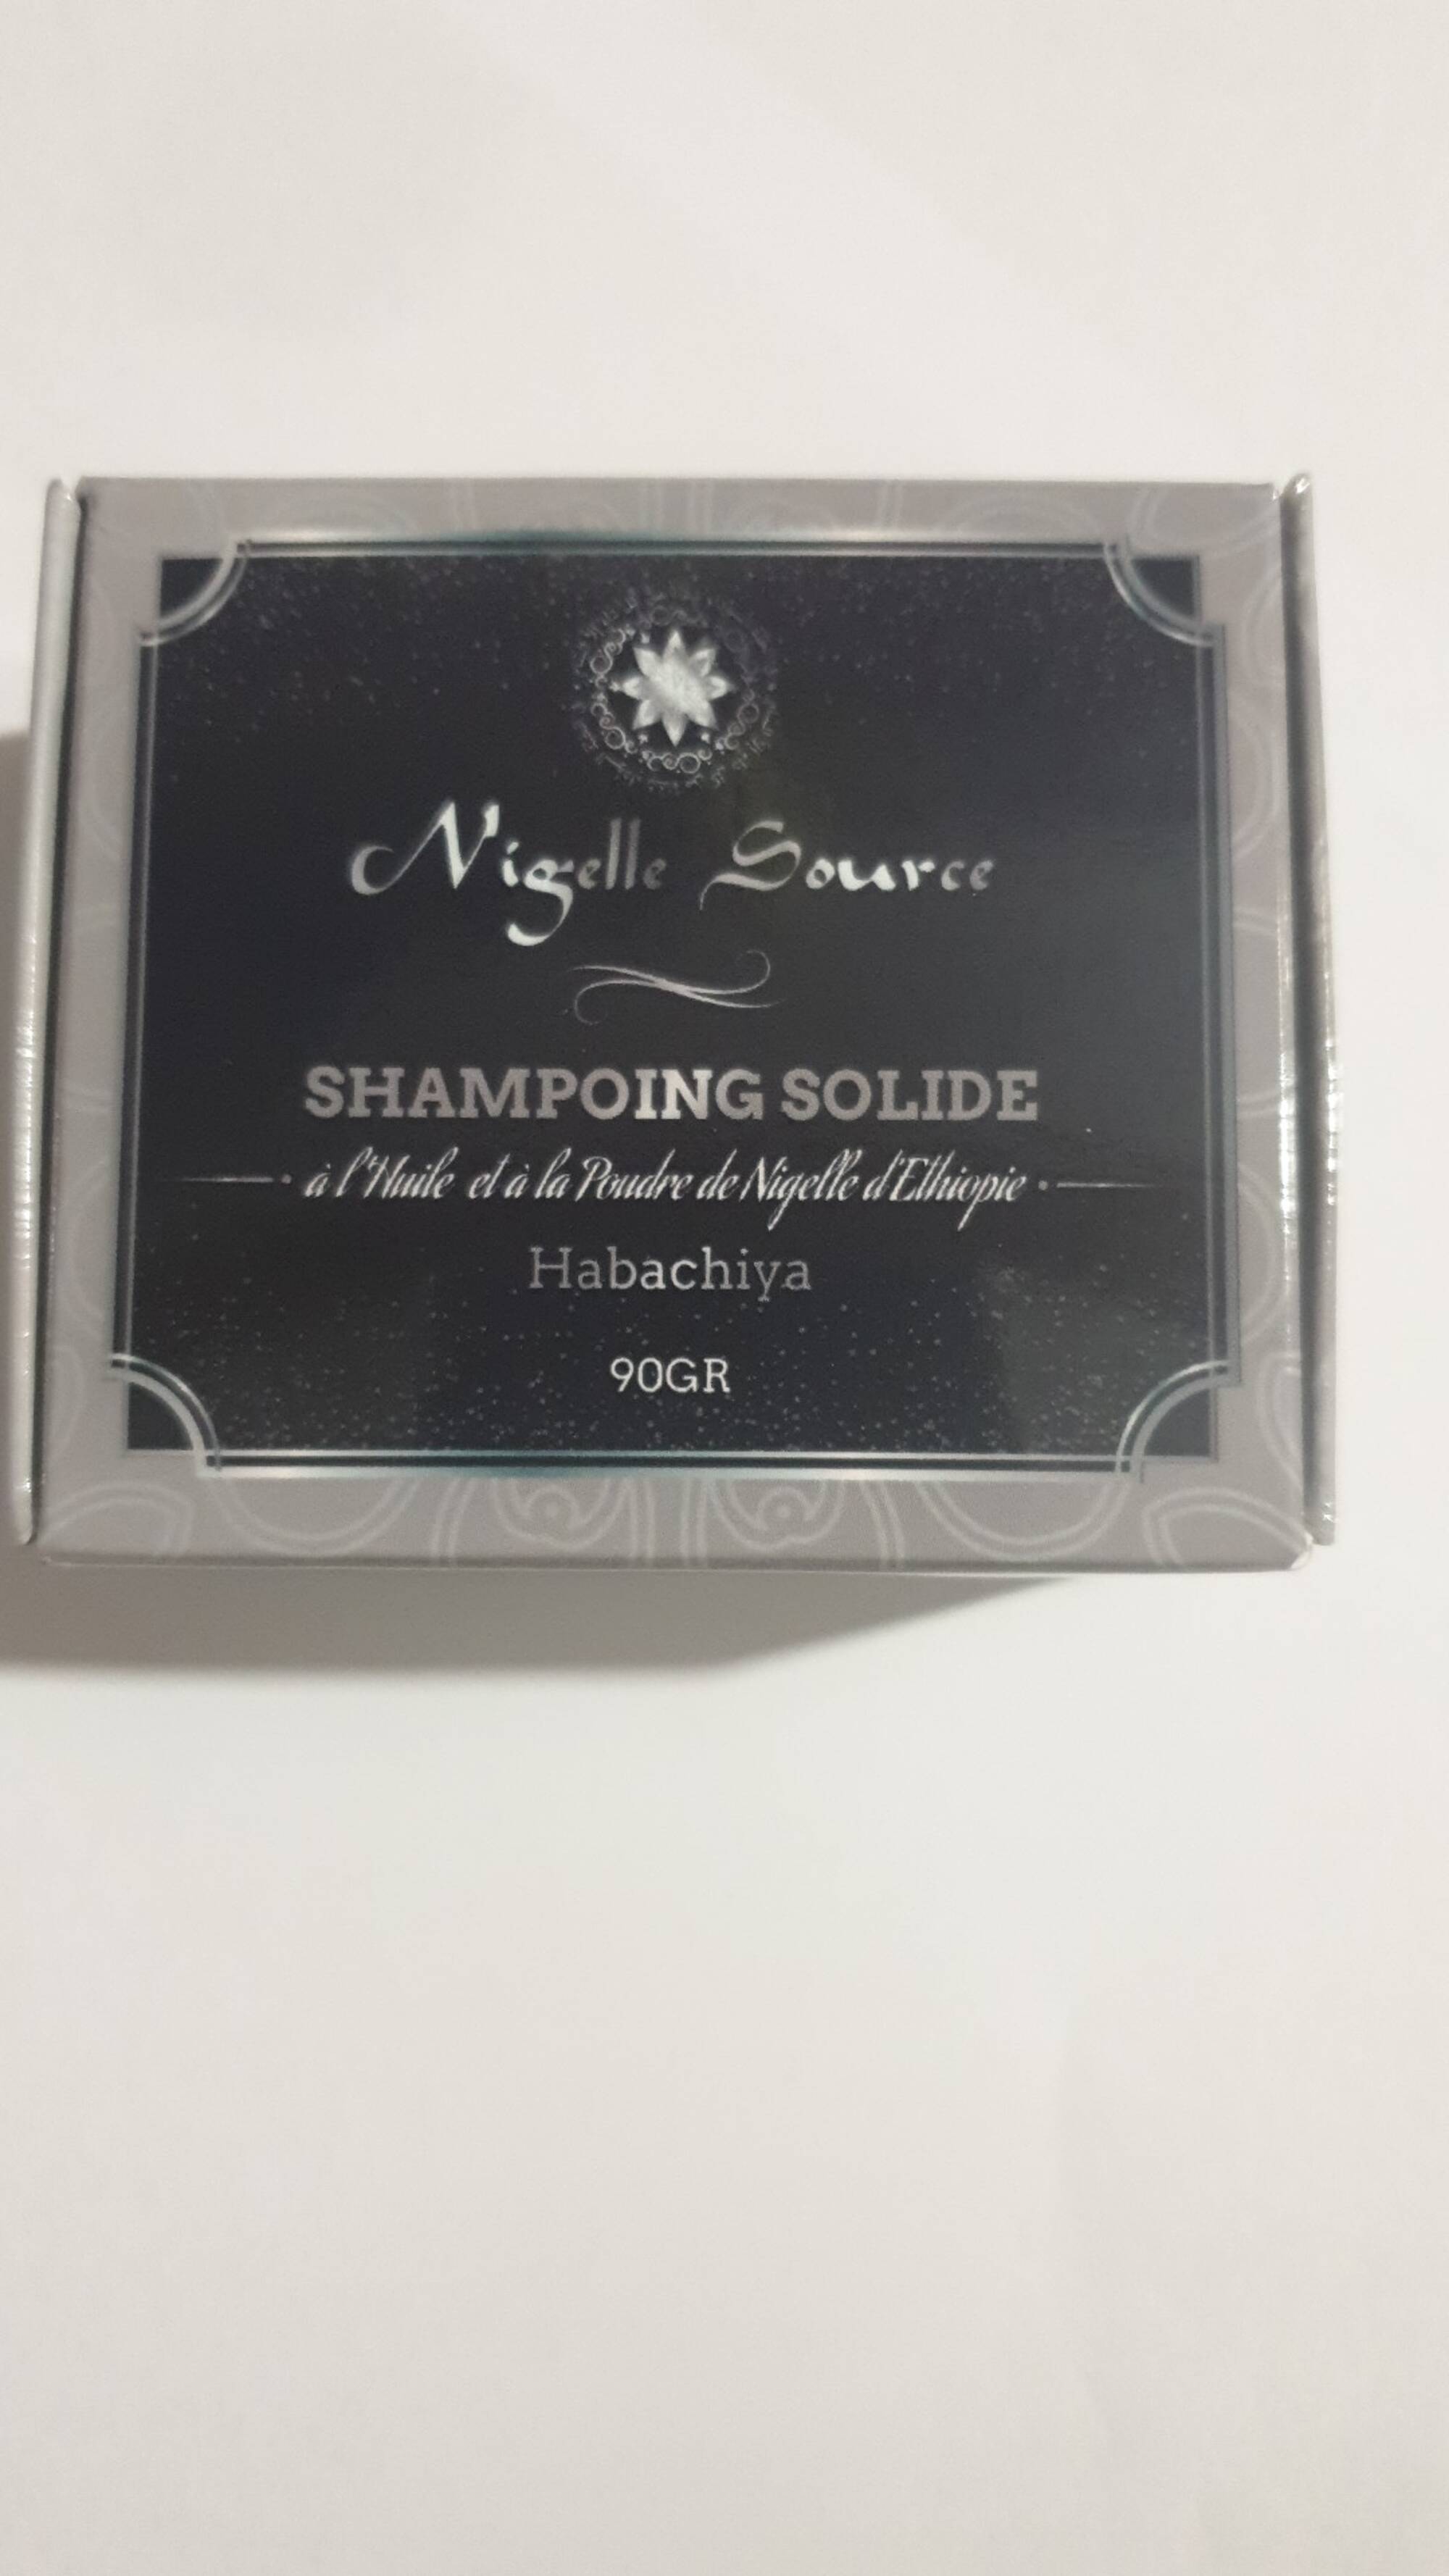 NIGELLE SOURCE - Habachiya - Shampooing solide à l'huile et à la poudre de nigelle d'Ethiopie